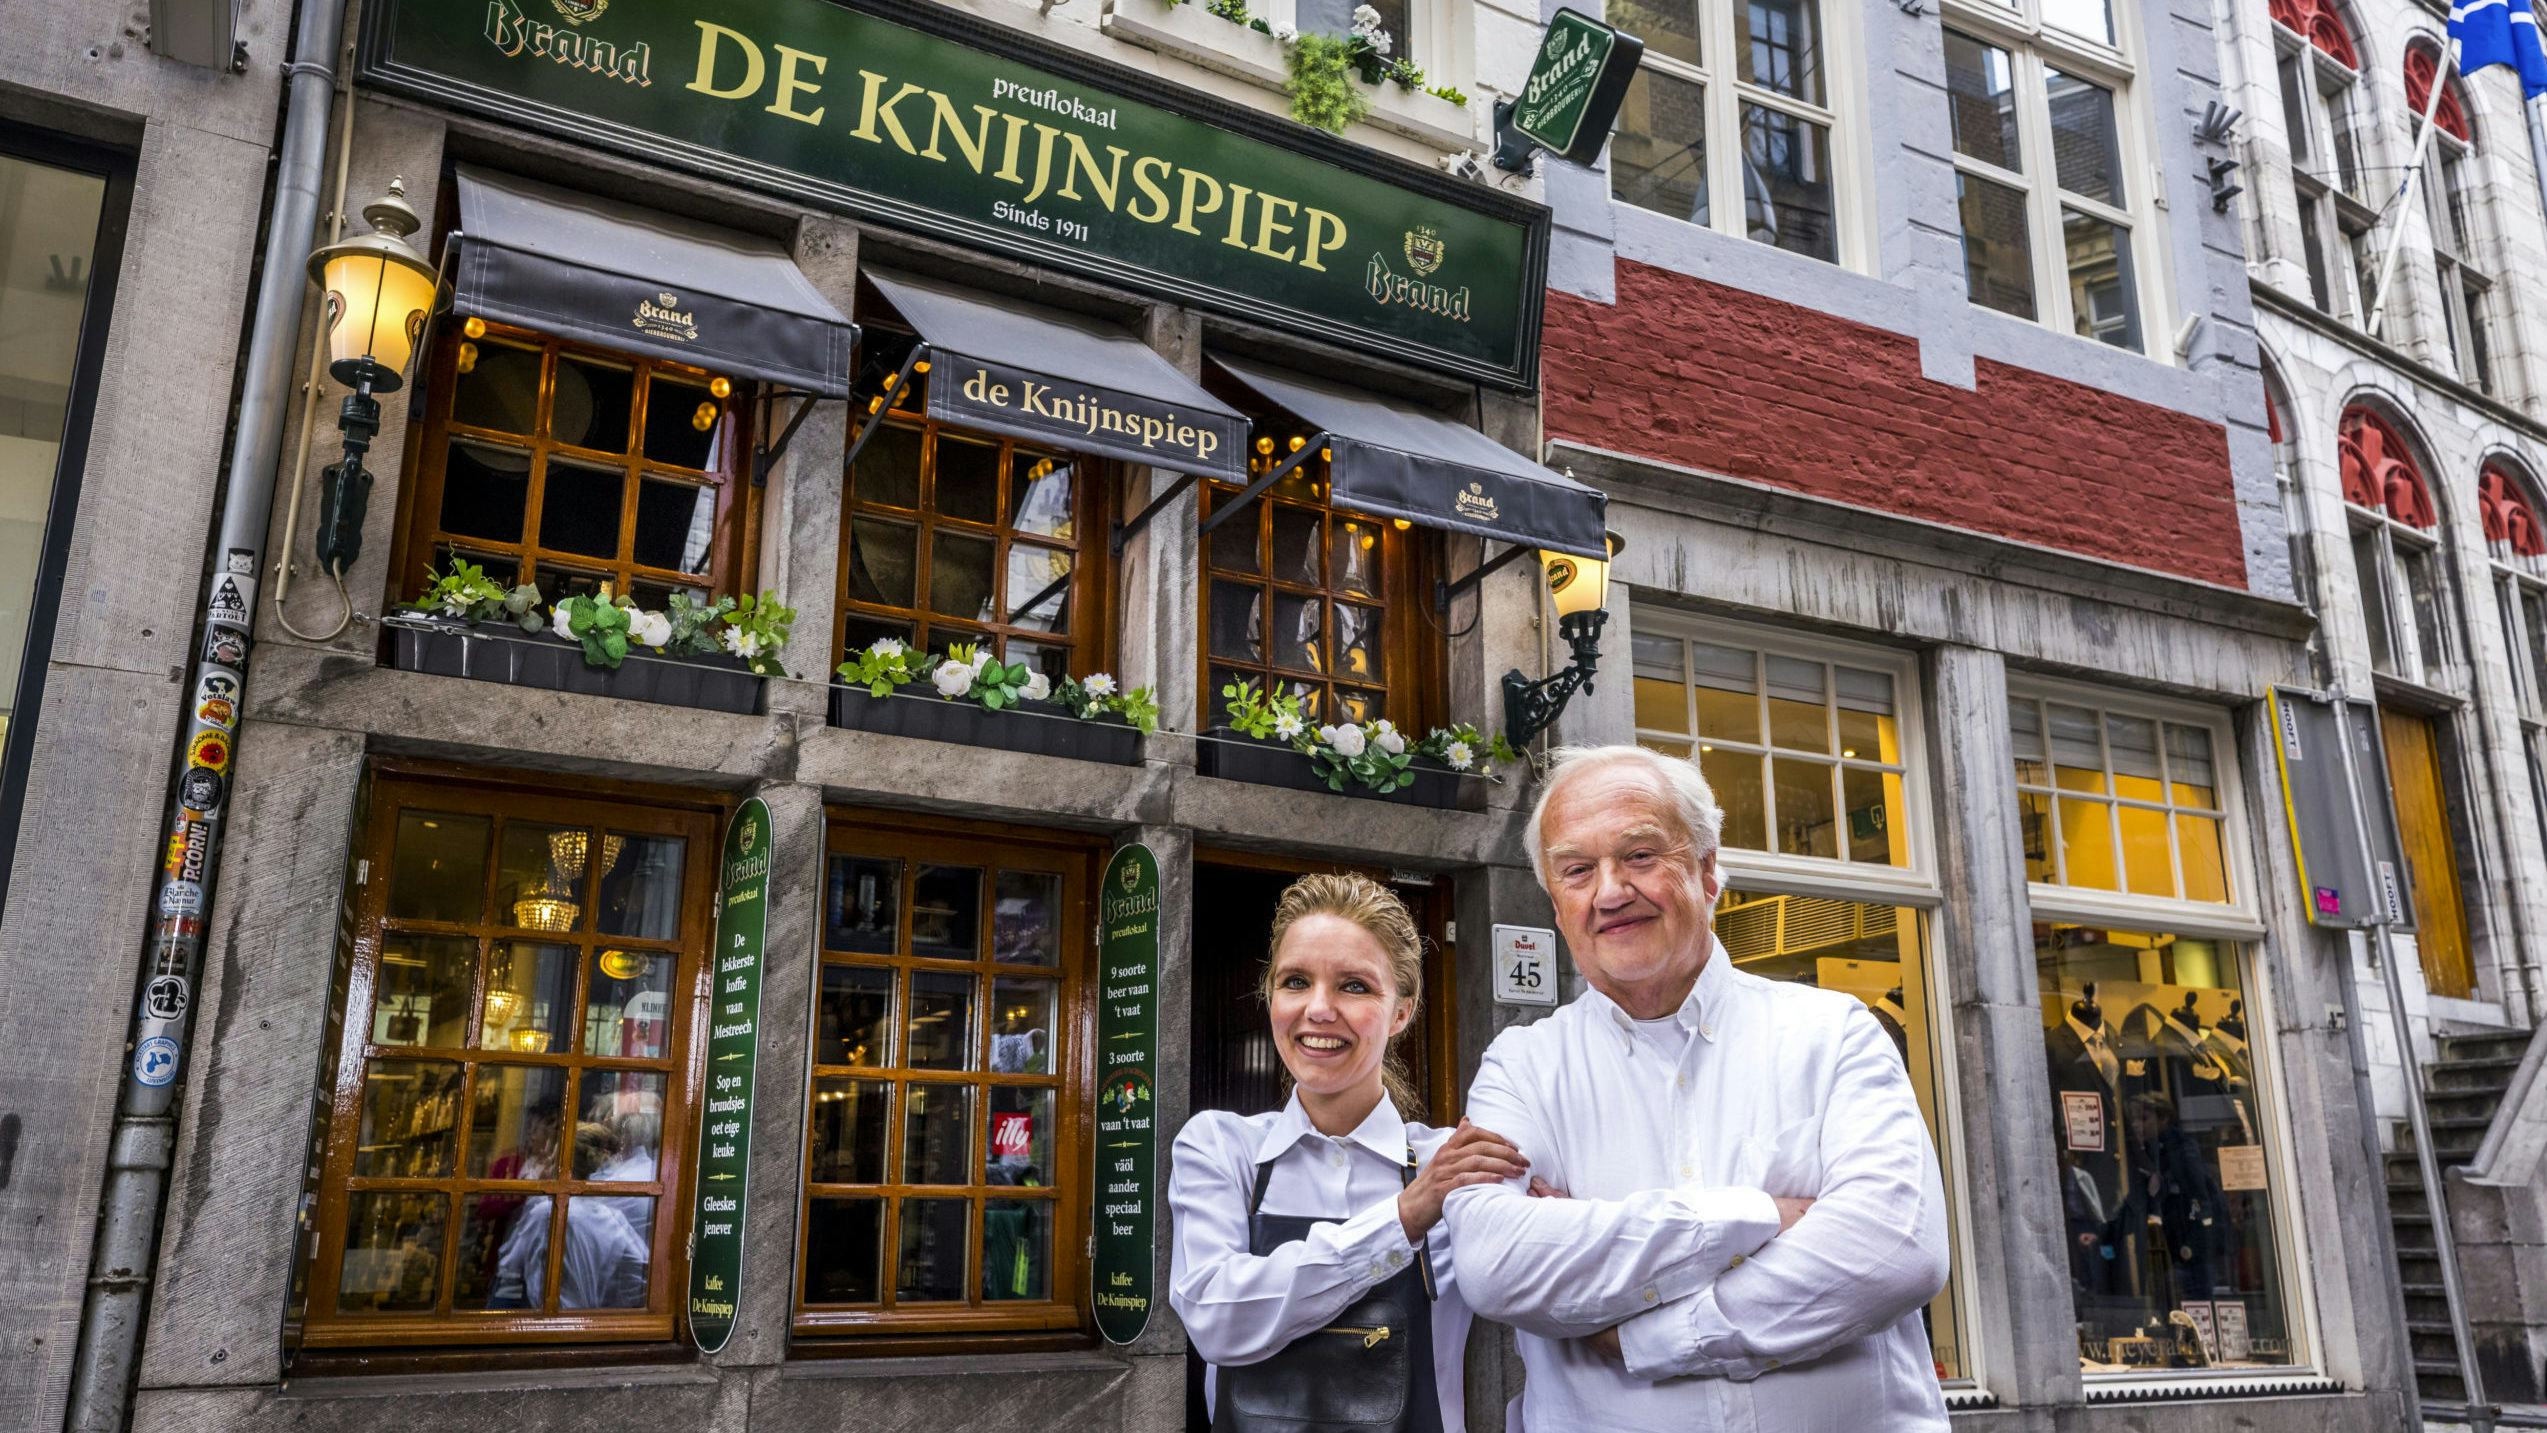 Melanie en Theo Hentzepeter, voor hun café De Knijnspiep.
(c) Marcel van Hoorn